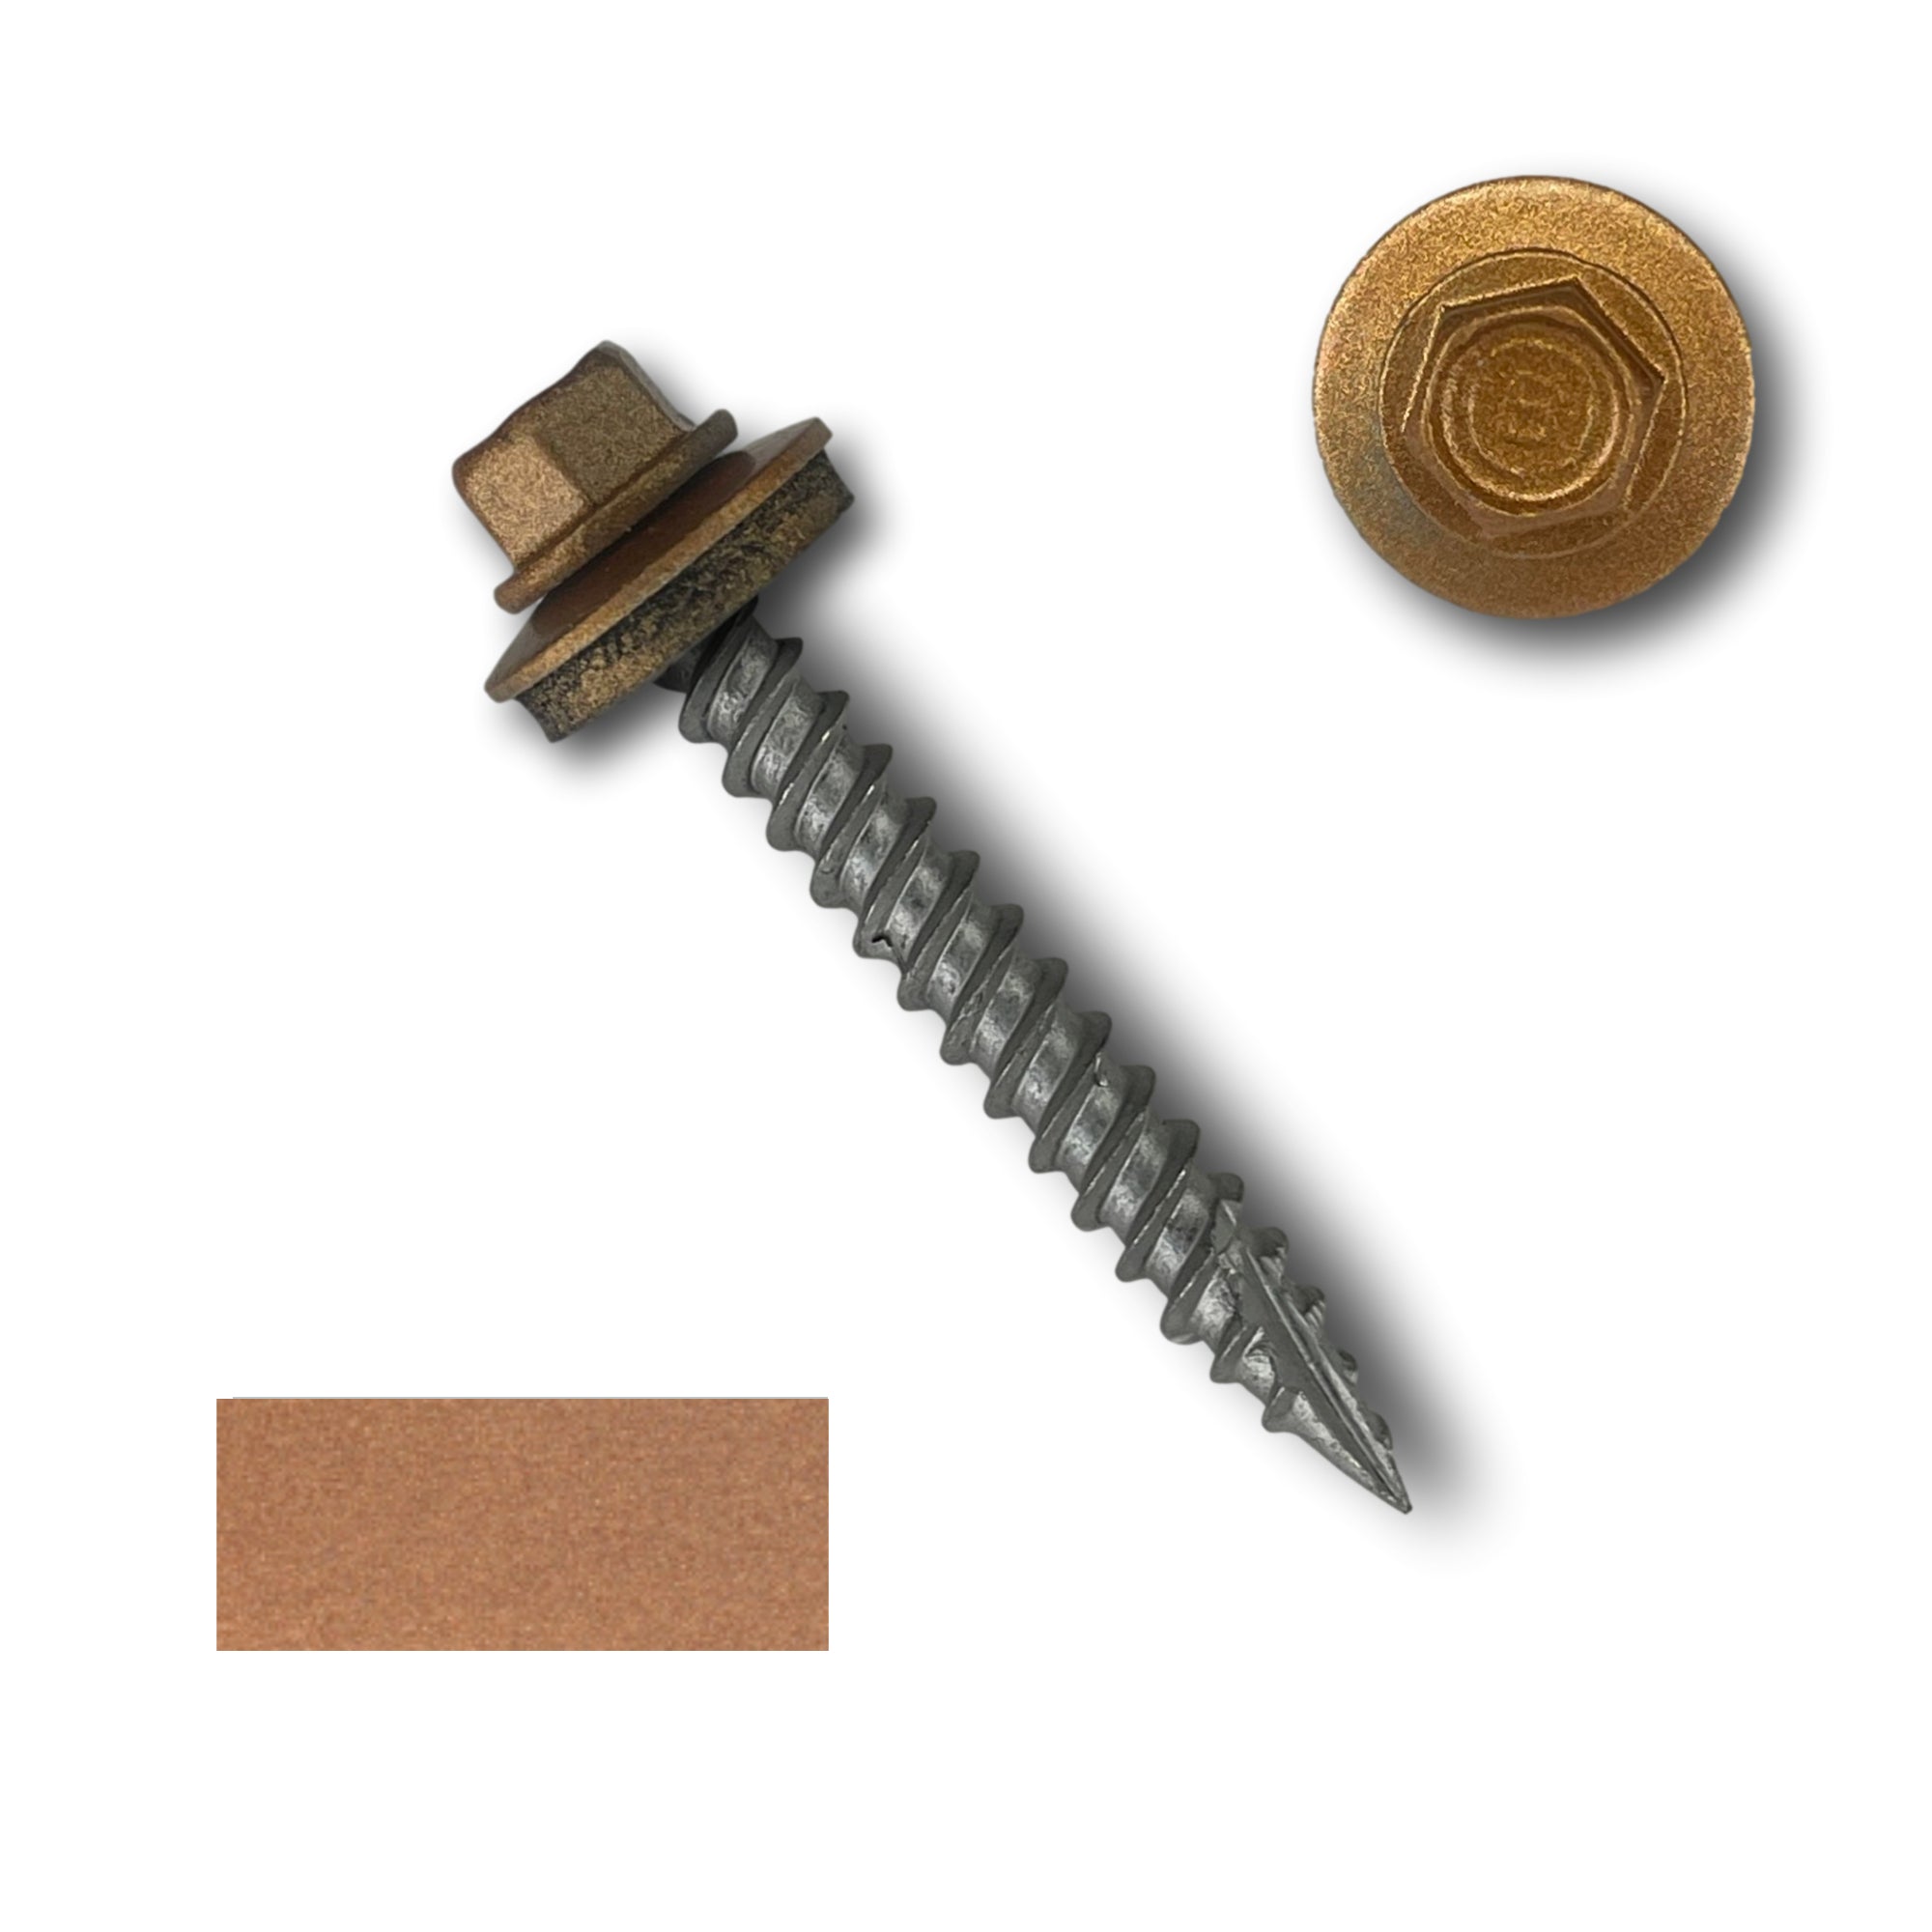 #10 x 1.5" Metal Roofing Screws (Metal-to-Wood)